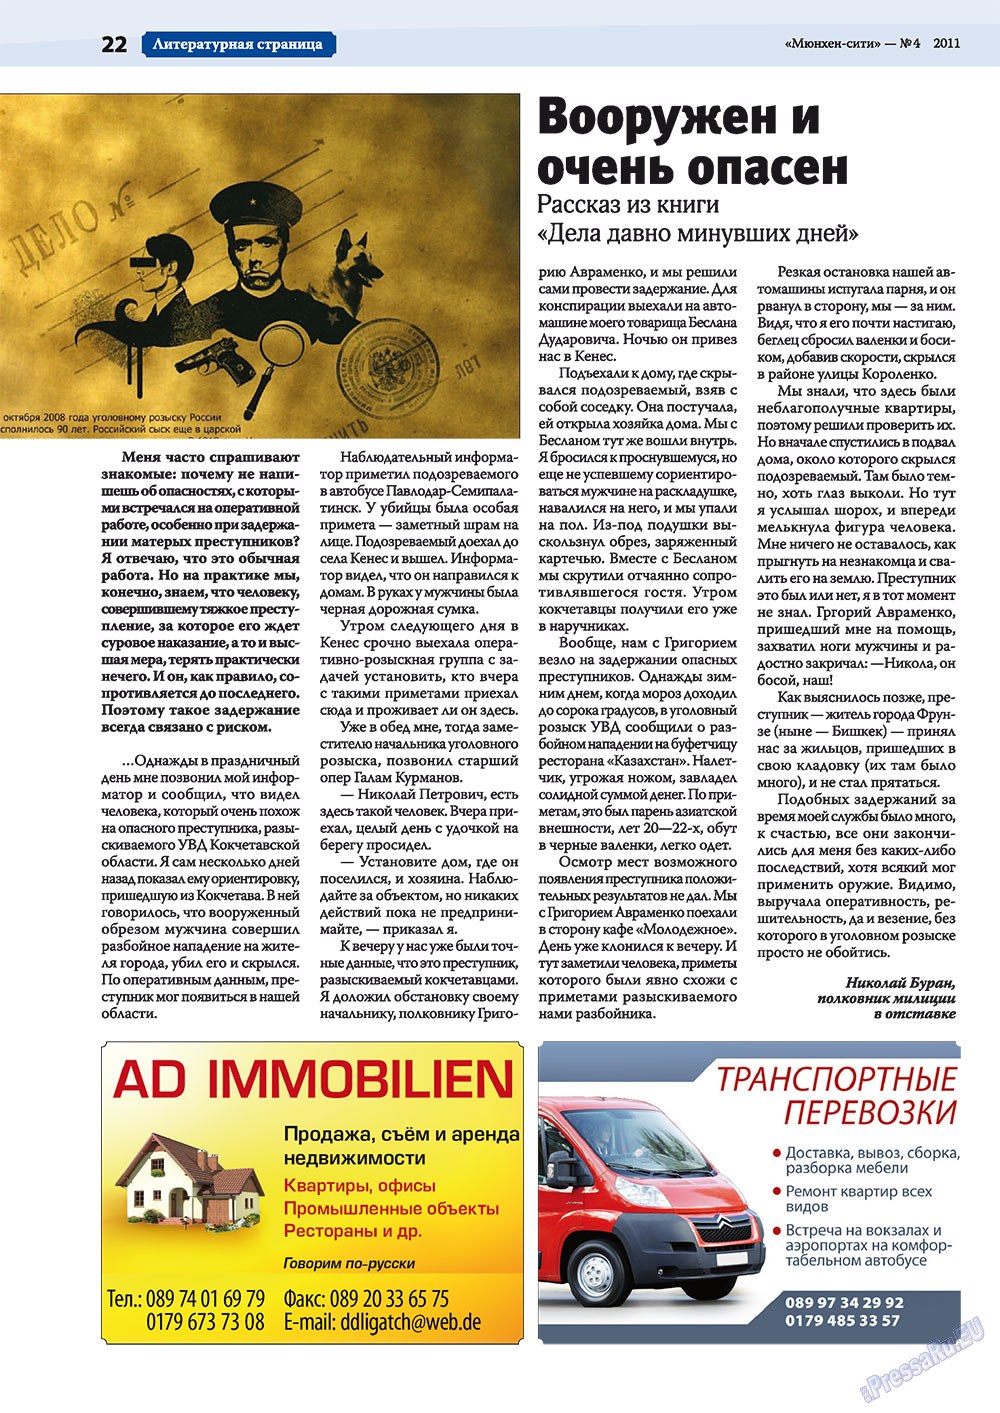 Мюнхен-сити (журнал). 2011 год, номер 4, стр. 22